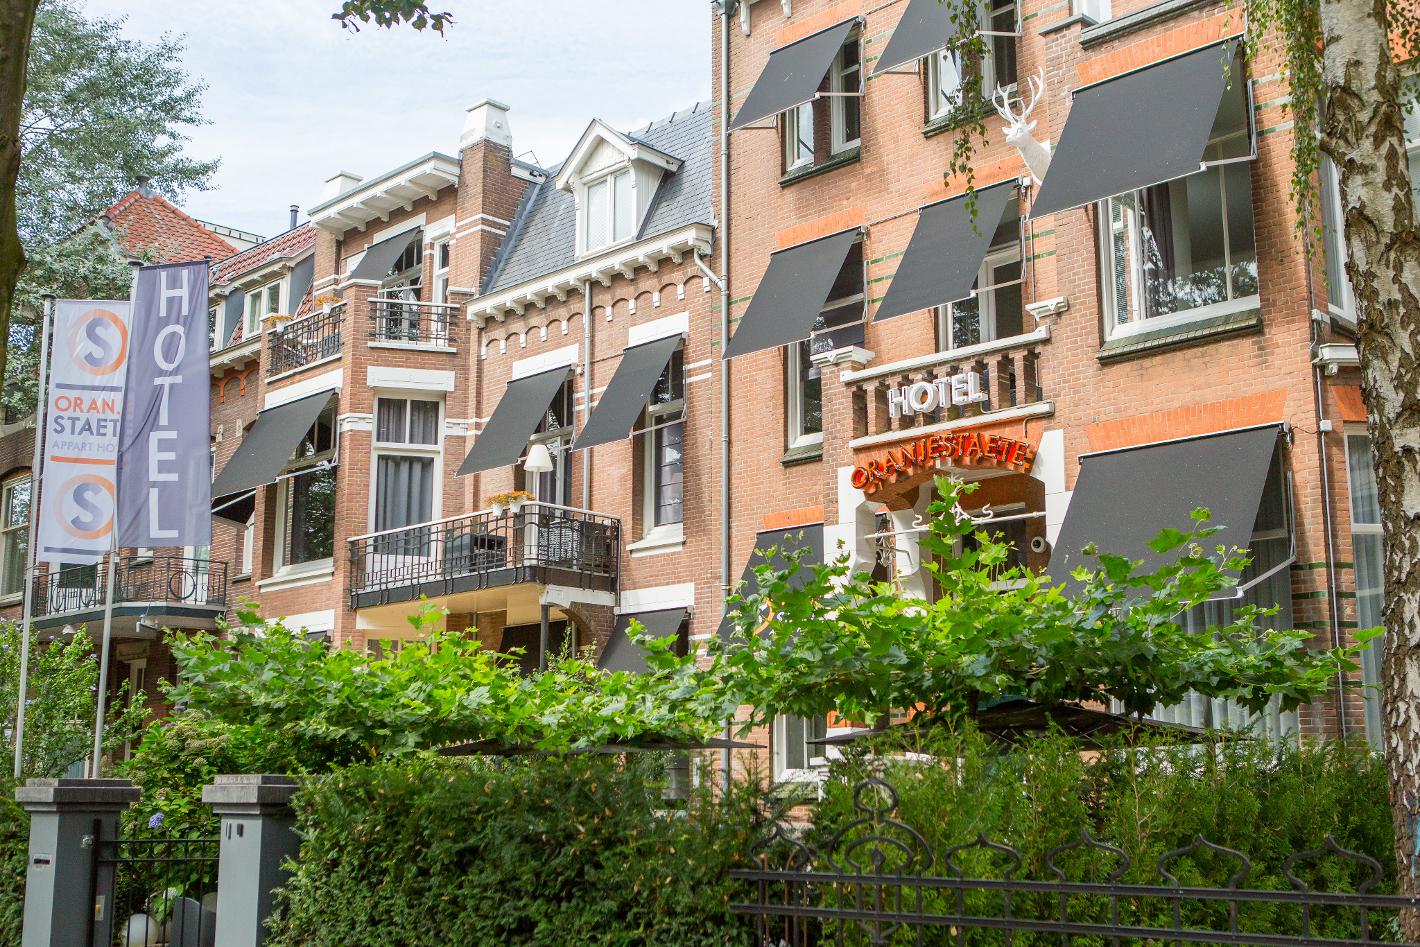 Foto Apparthotel Oranjestaete in Nijmegen, Slapen, Hotels & logies - #1